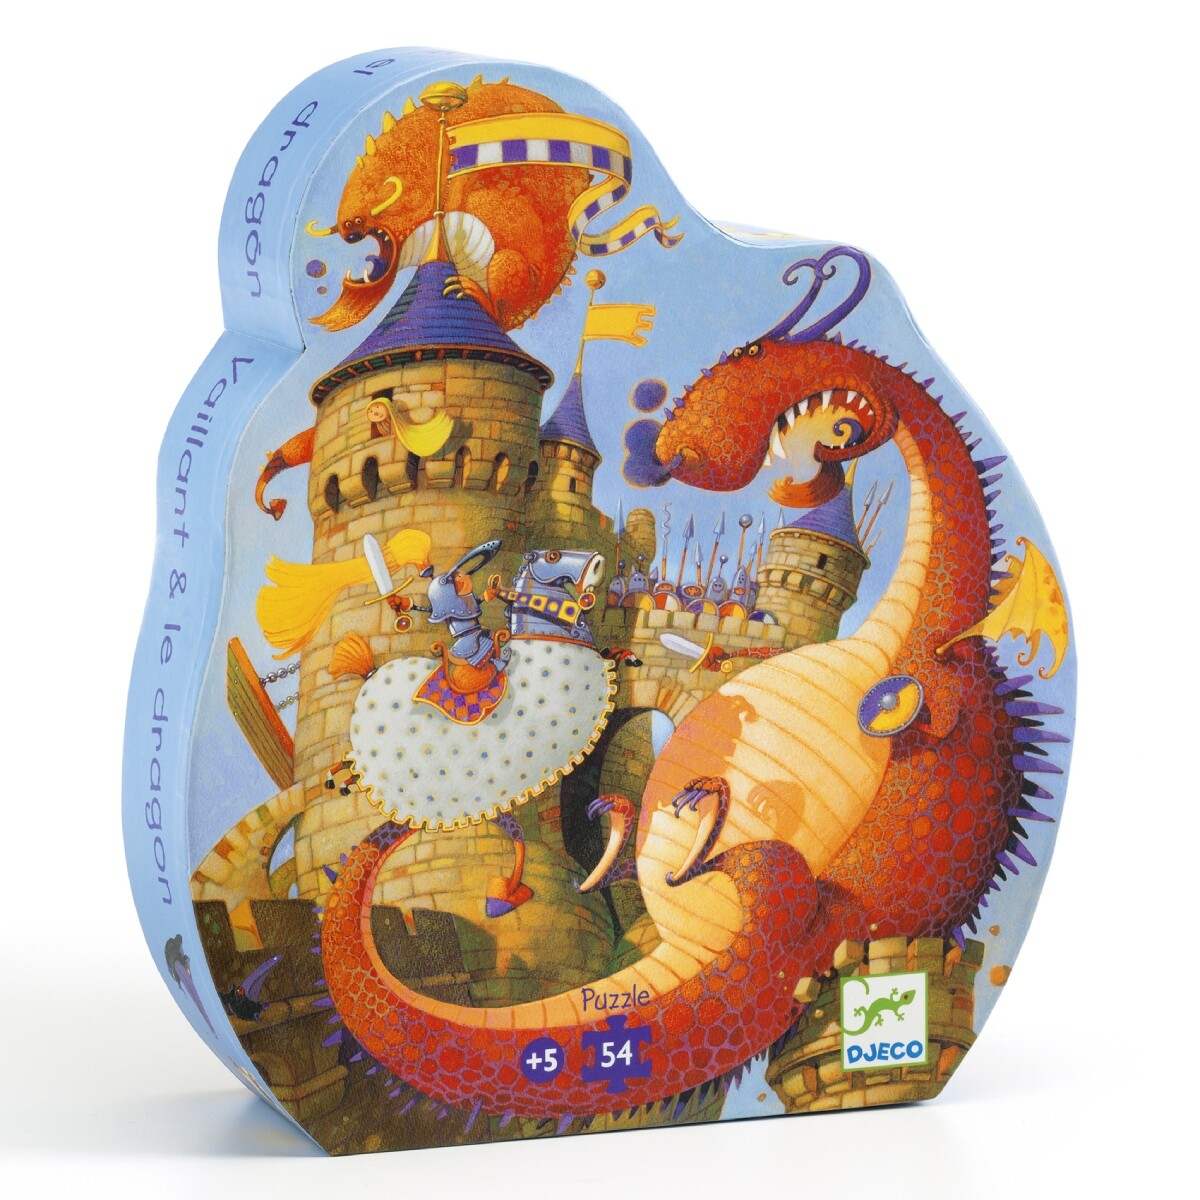 Puzzle Silueta Djeco 54 Pzas - Vaillant y el Dragón 